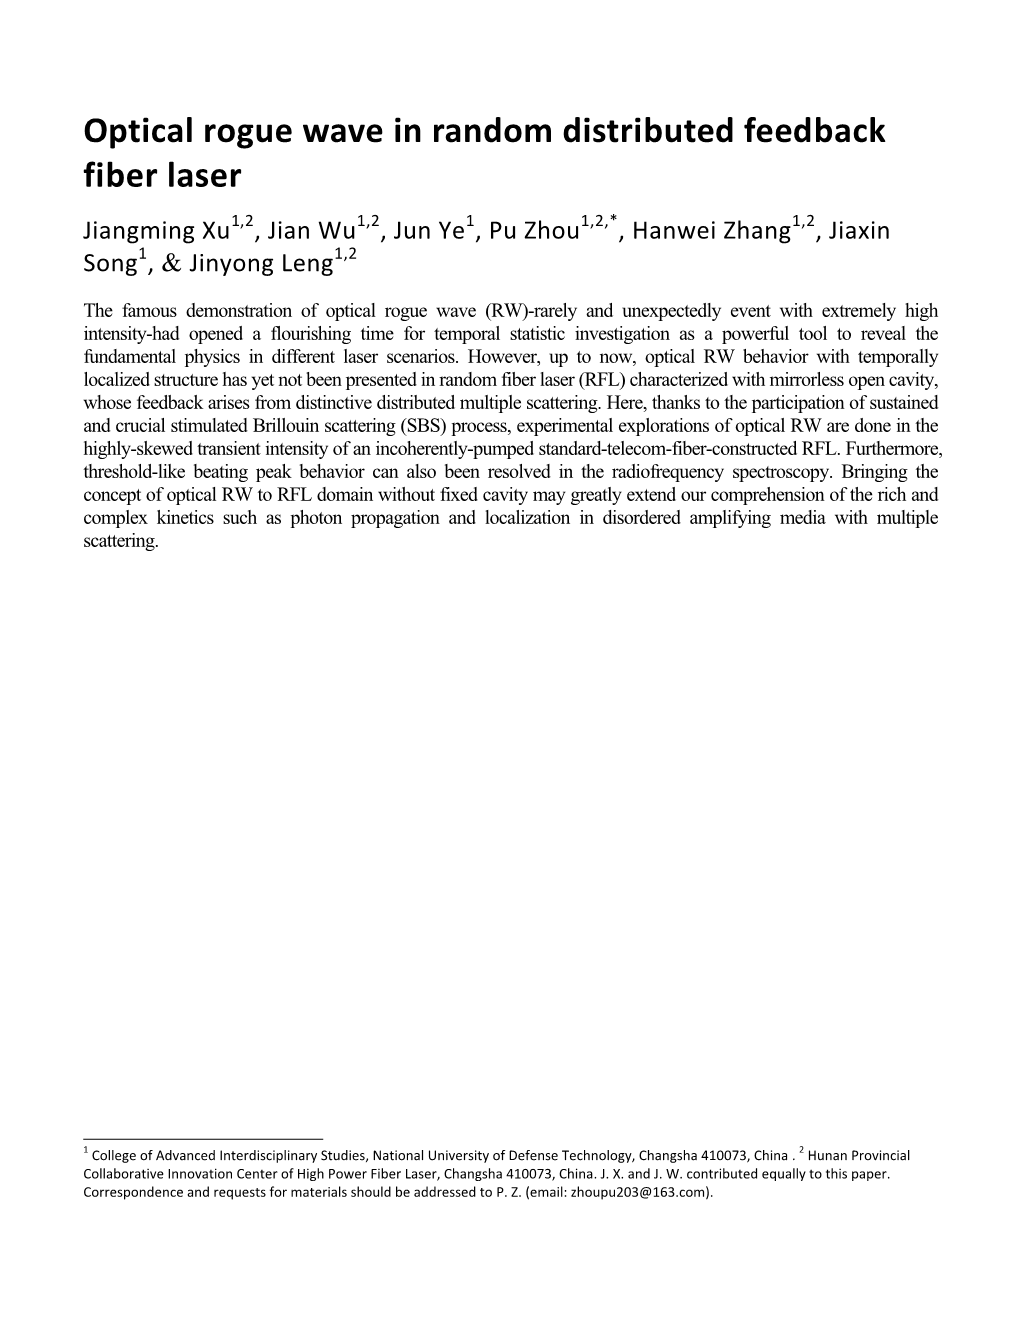 Optical Rogue Wave in Random Distributed Feedback Fiber Laser Jiangming Xu1,2, Jian Wu1,2, Jun Ye1, Pu Zhou1,2,*, Hanwei Zhang1,2, Jiaxin Song1, & Jinyong Leng1,2